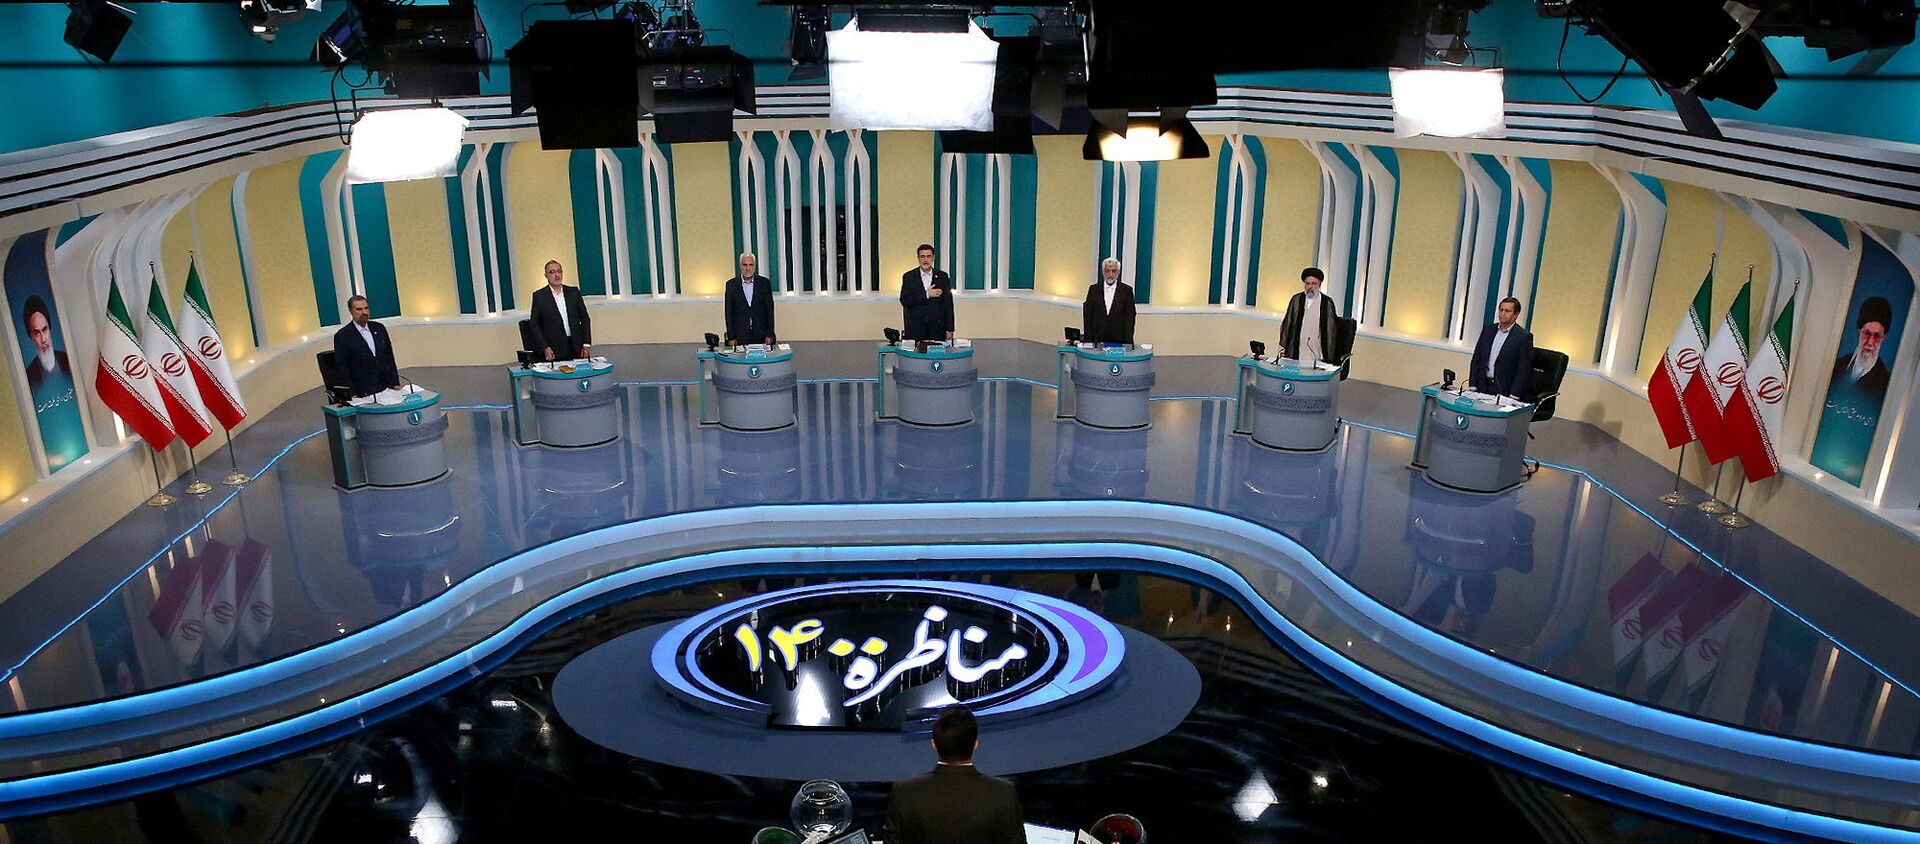 منظر عام للمناظرة الانتخابية في استوديو تلفزيوني، في طهران، إيران ، 8 يونيو/ حزيران 2021 - سبوتنيك عربي, 1920, 17.06.2021